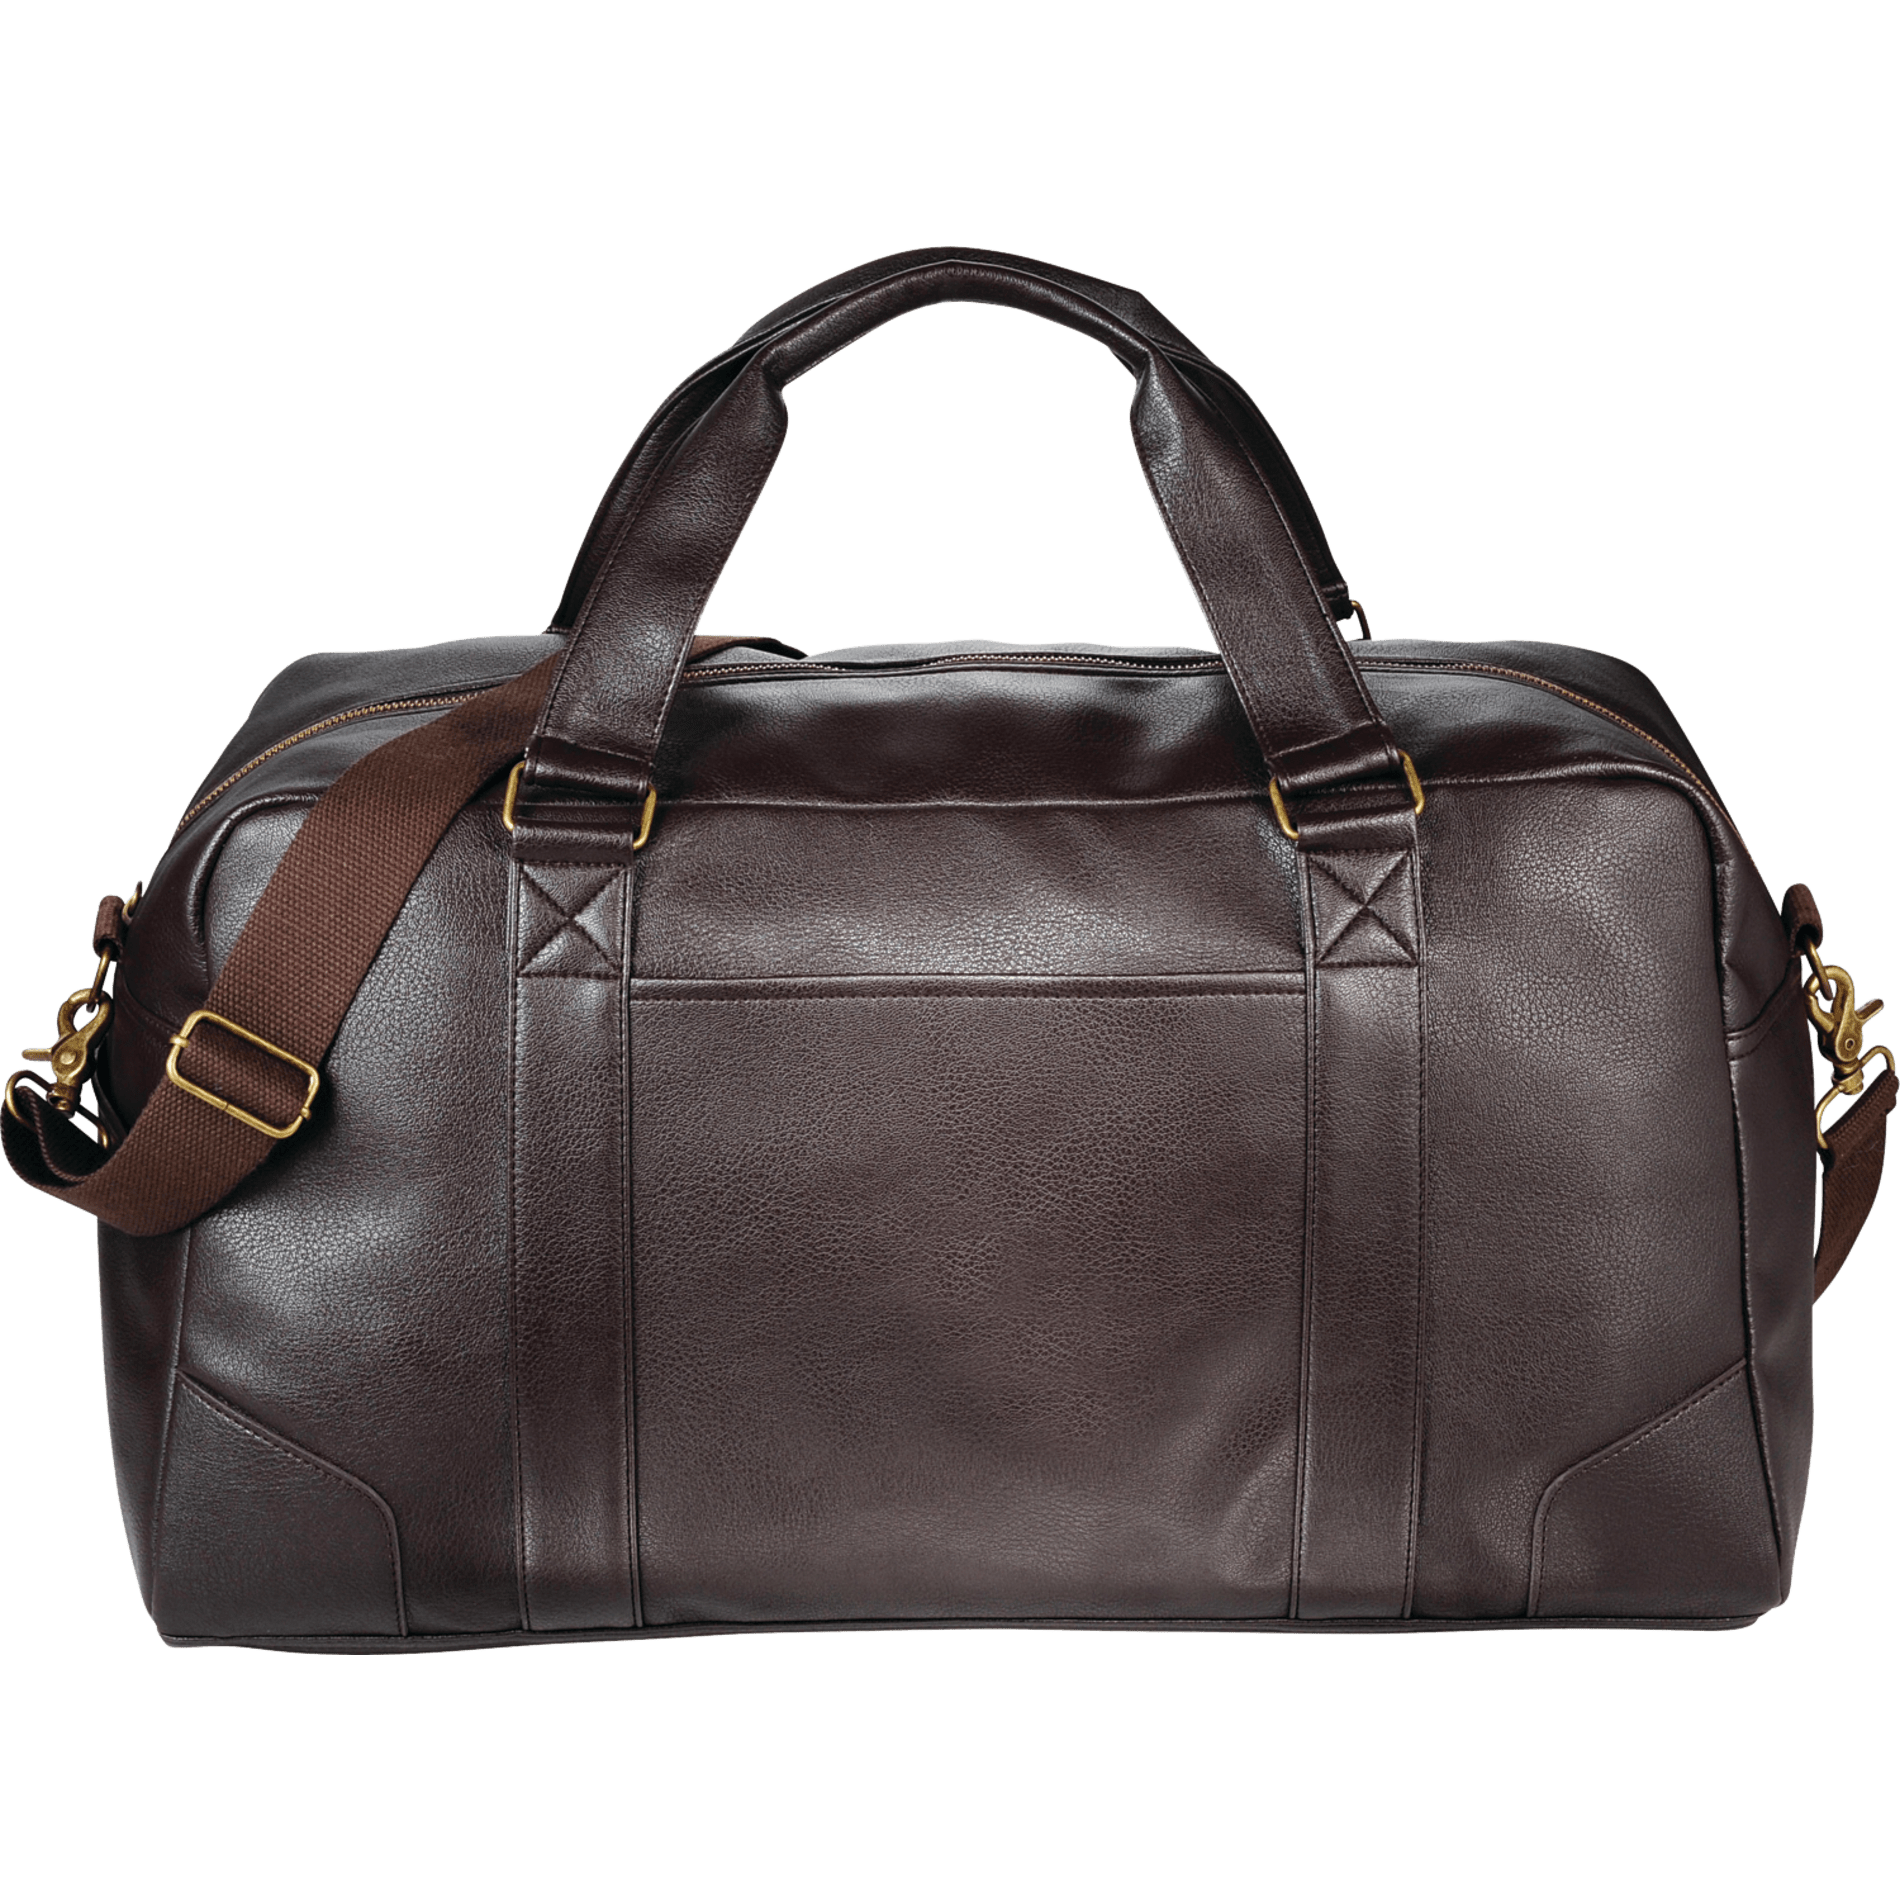 LEEDS 5900-03 - Oxford 20" Weekender Duffel Bag